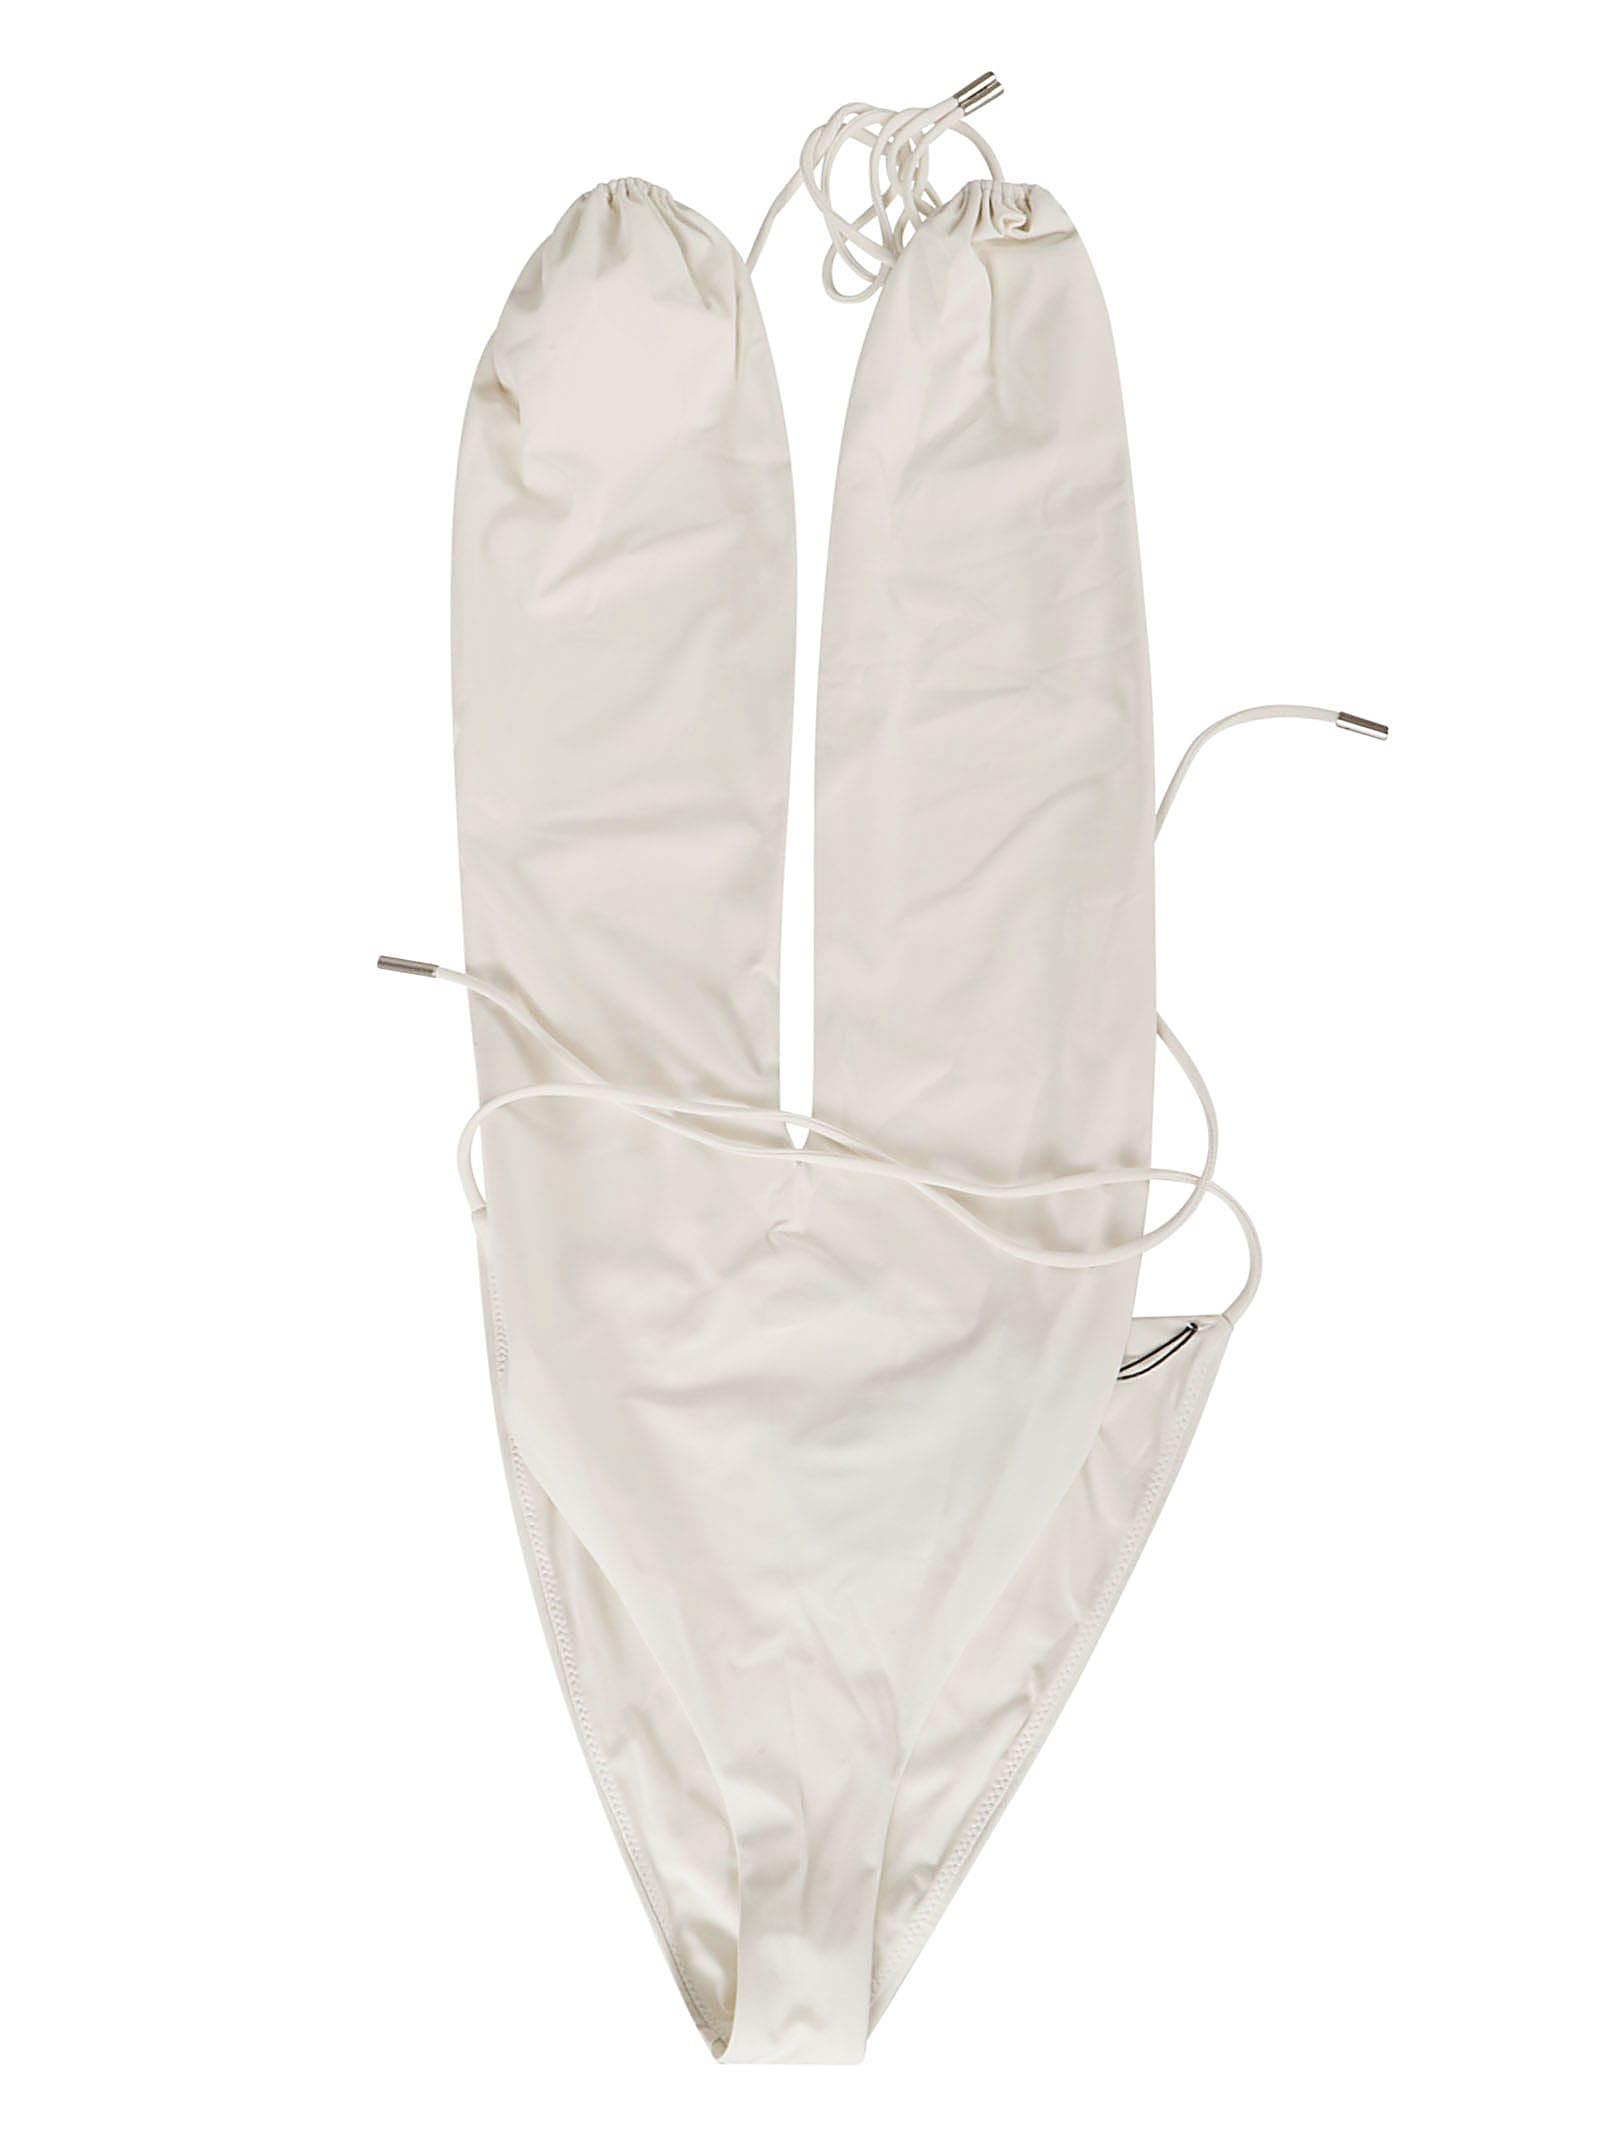 Saint Laurent Maillot V-halter Swimsuit In White/cream